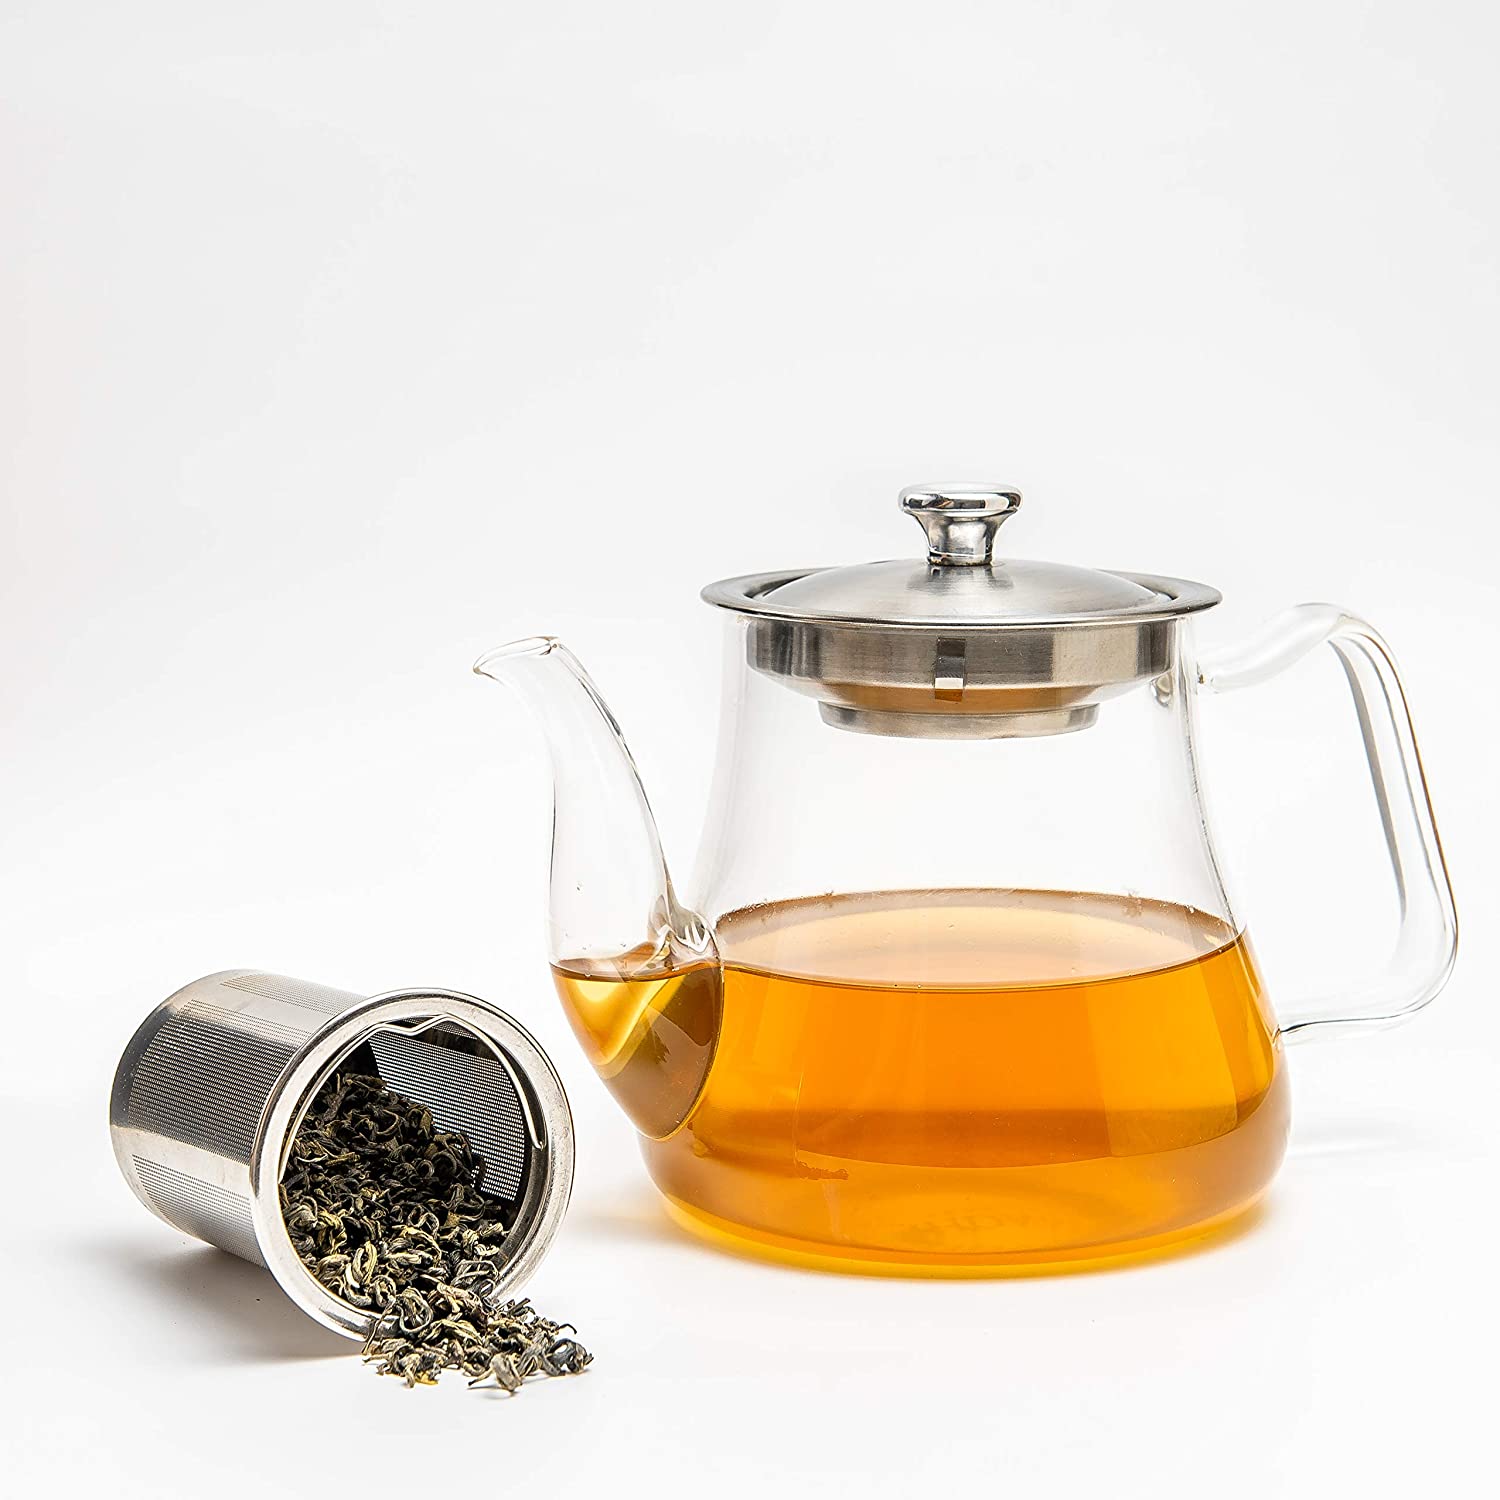 Buy Glass Tea Pot with Infuser Online @ Best Price - VAHDAM® USA